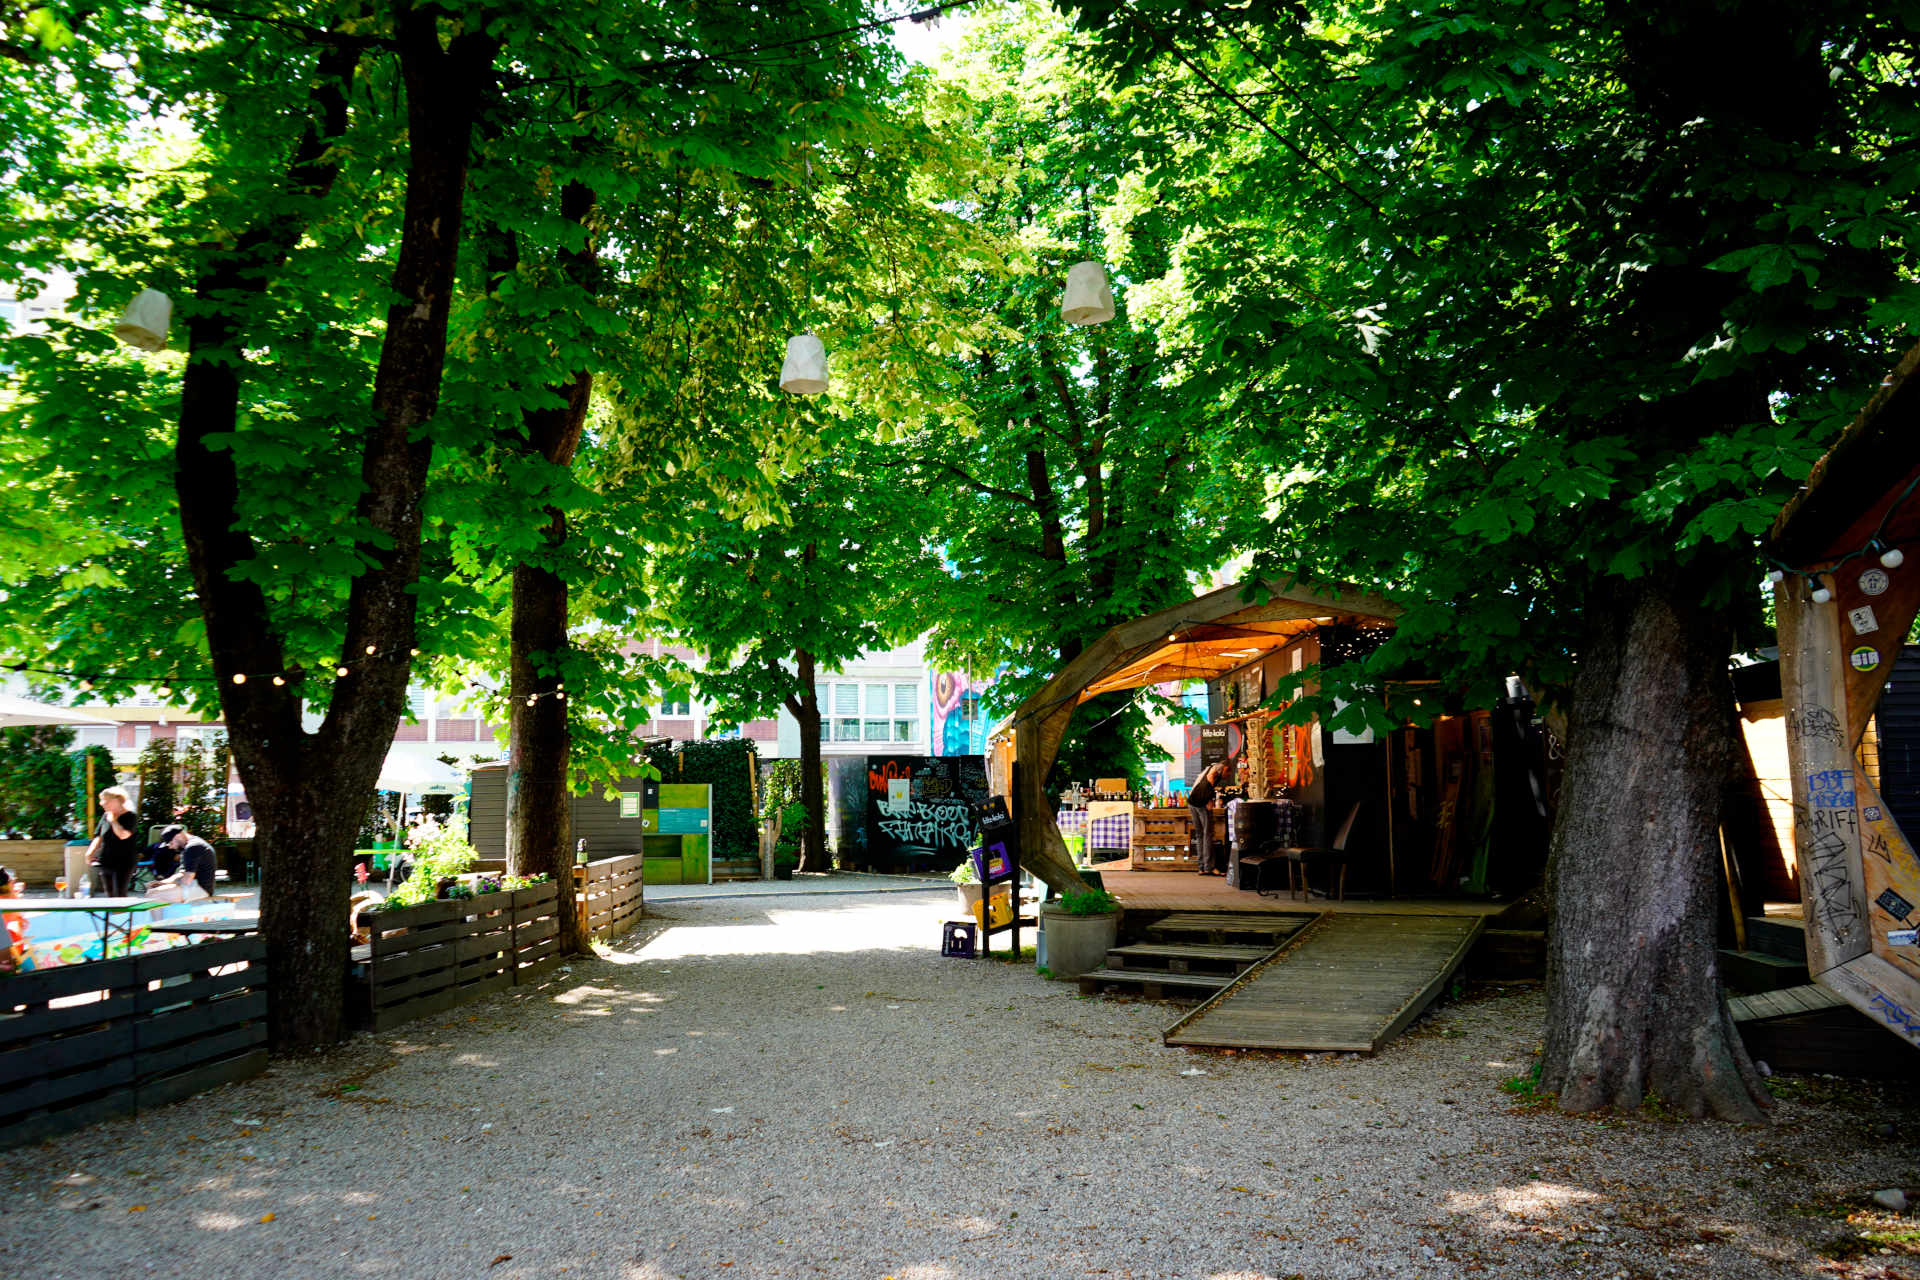 Ein Platz mit großen Kastanienbäumen, darunter Kies, hinten rechts im Bild ein Holzpavillon mit einem Kiosk.